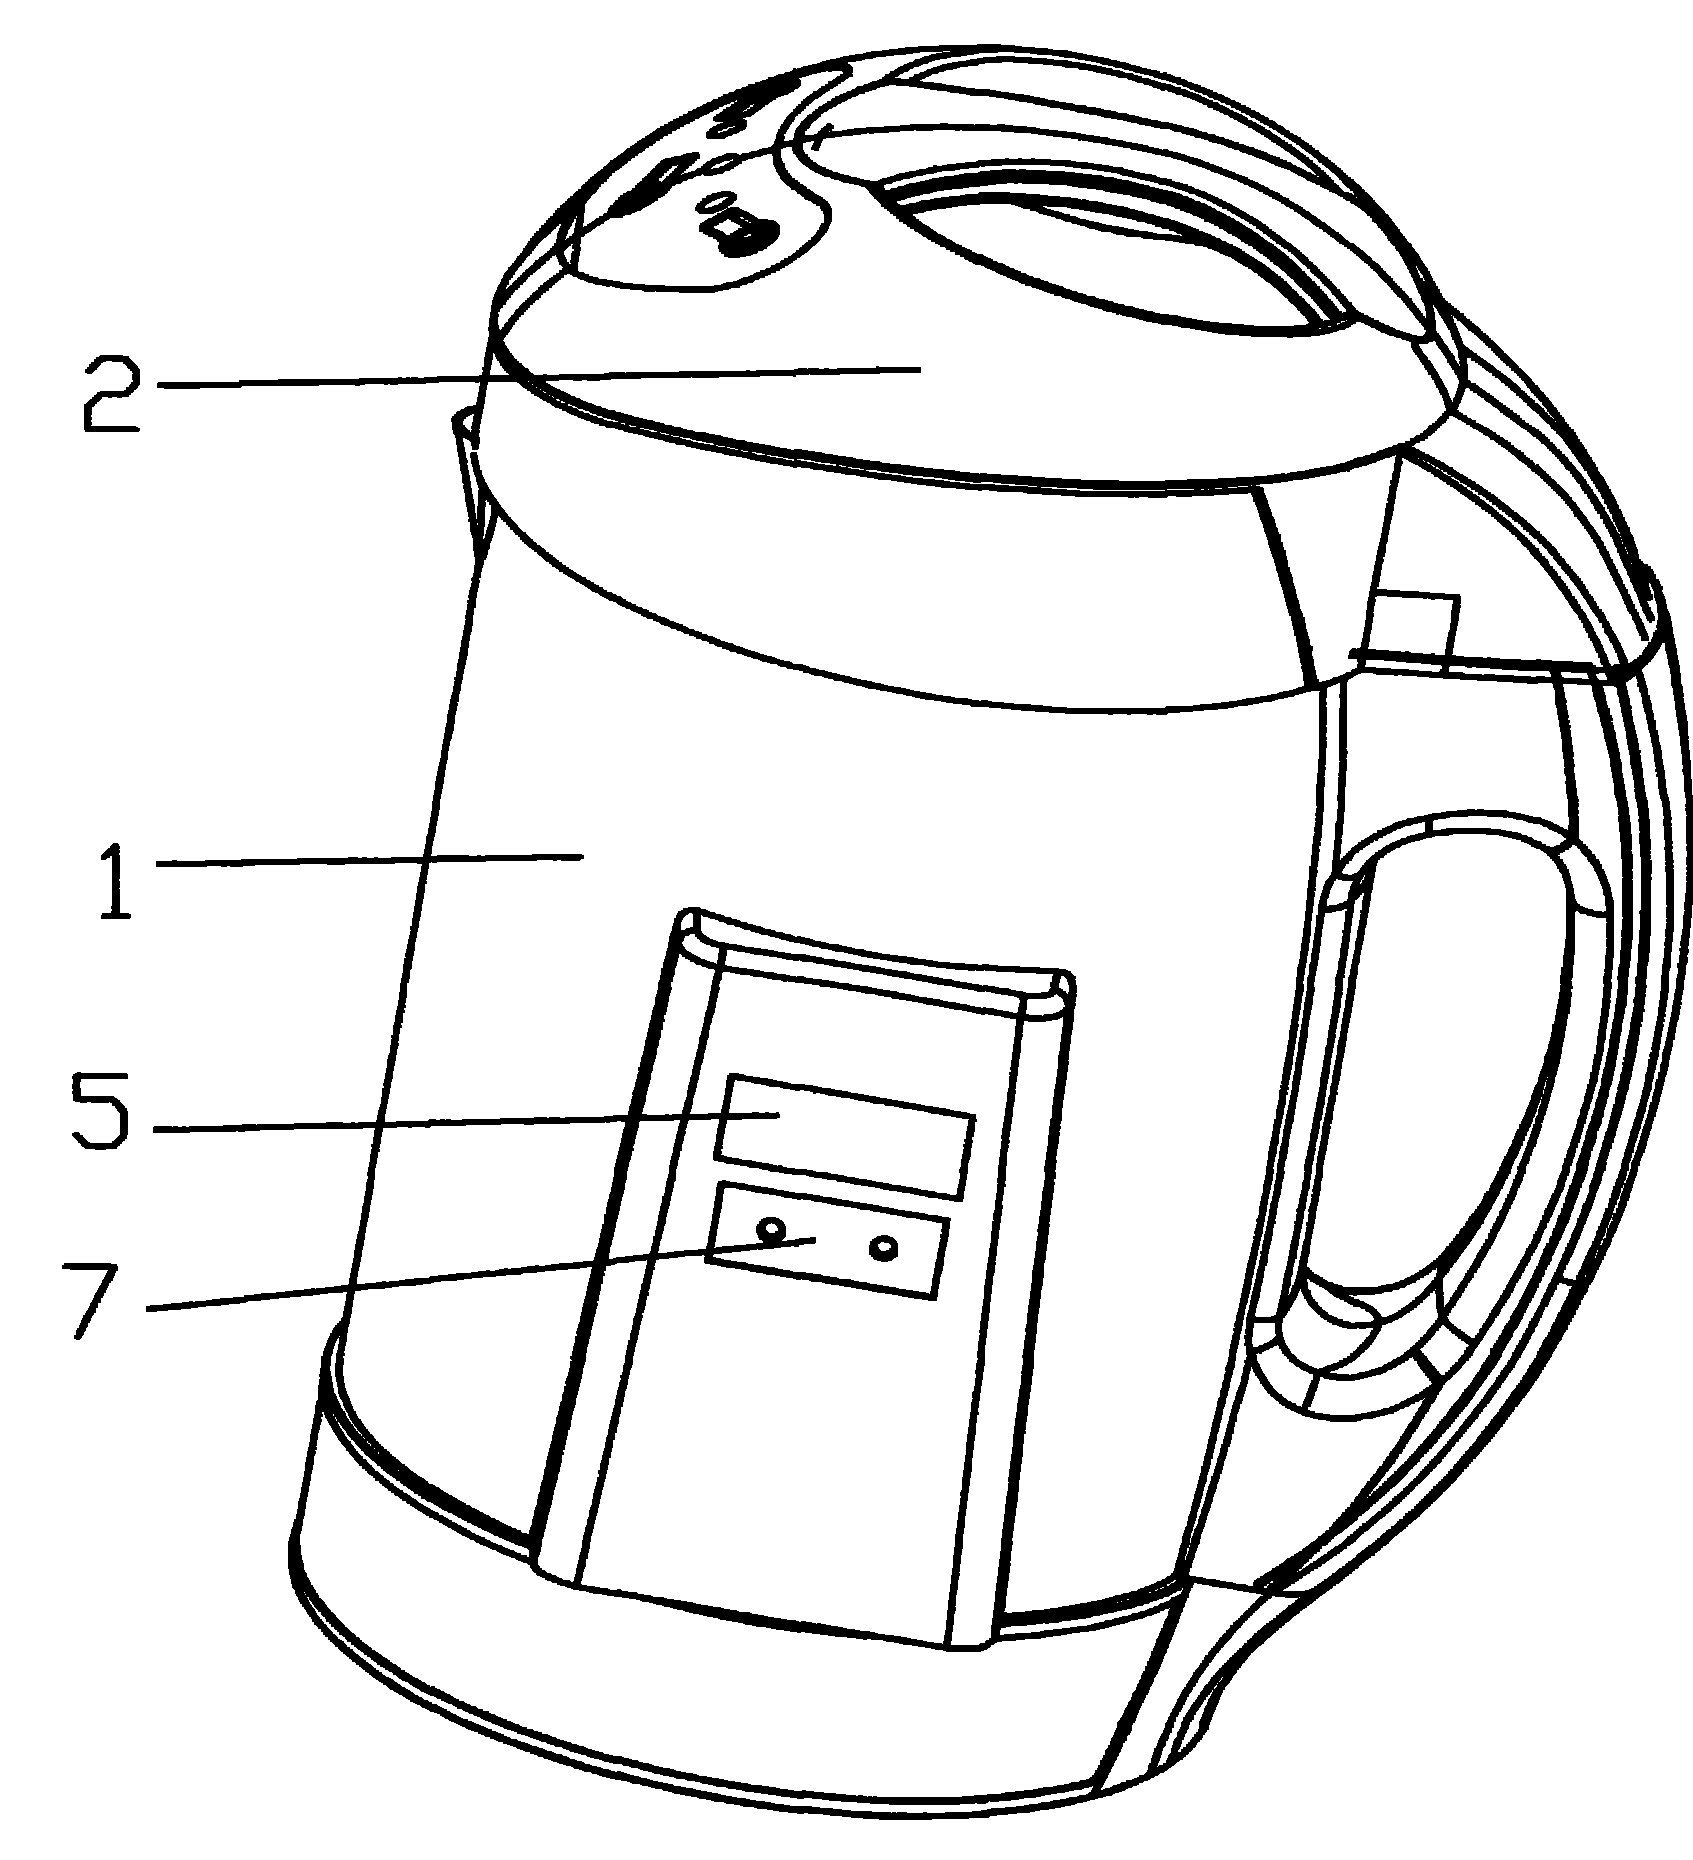 一种可显示豆浆机桶体内温度的豆浆机-智农361-国际专利·农资器具